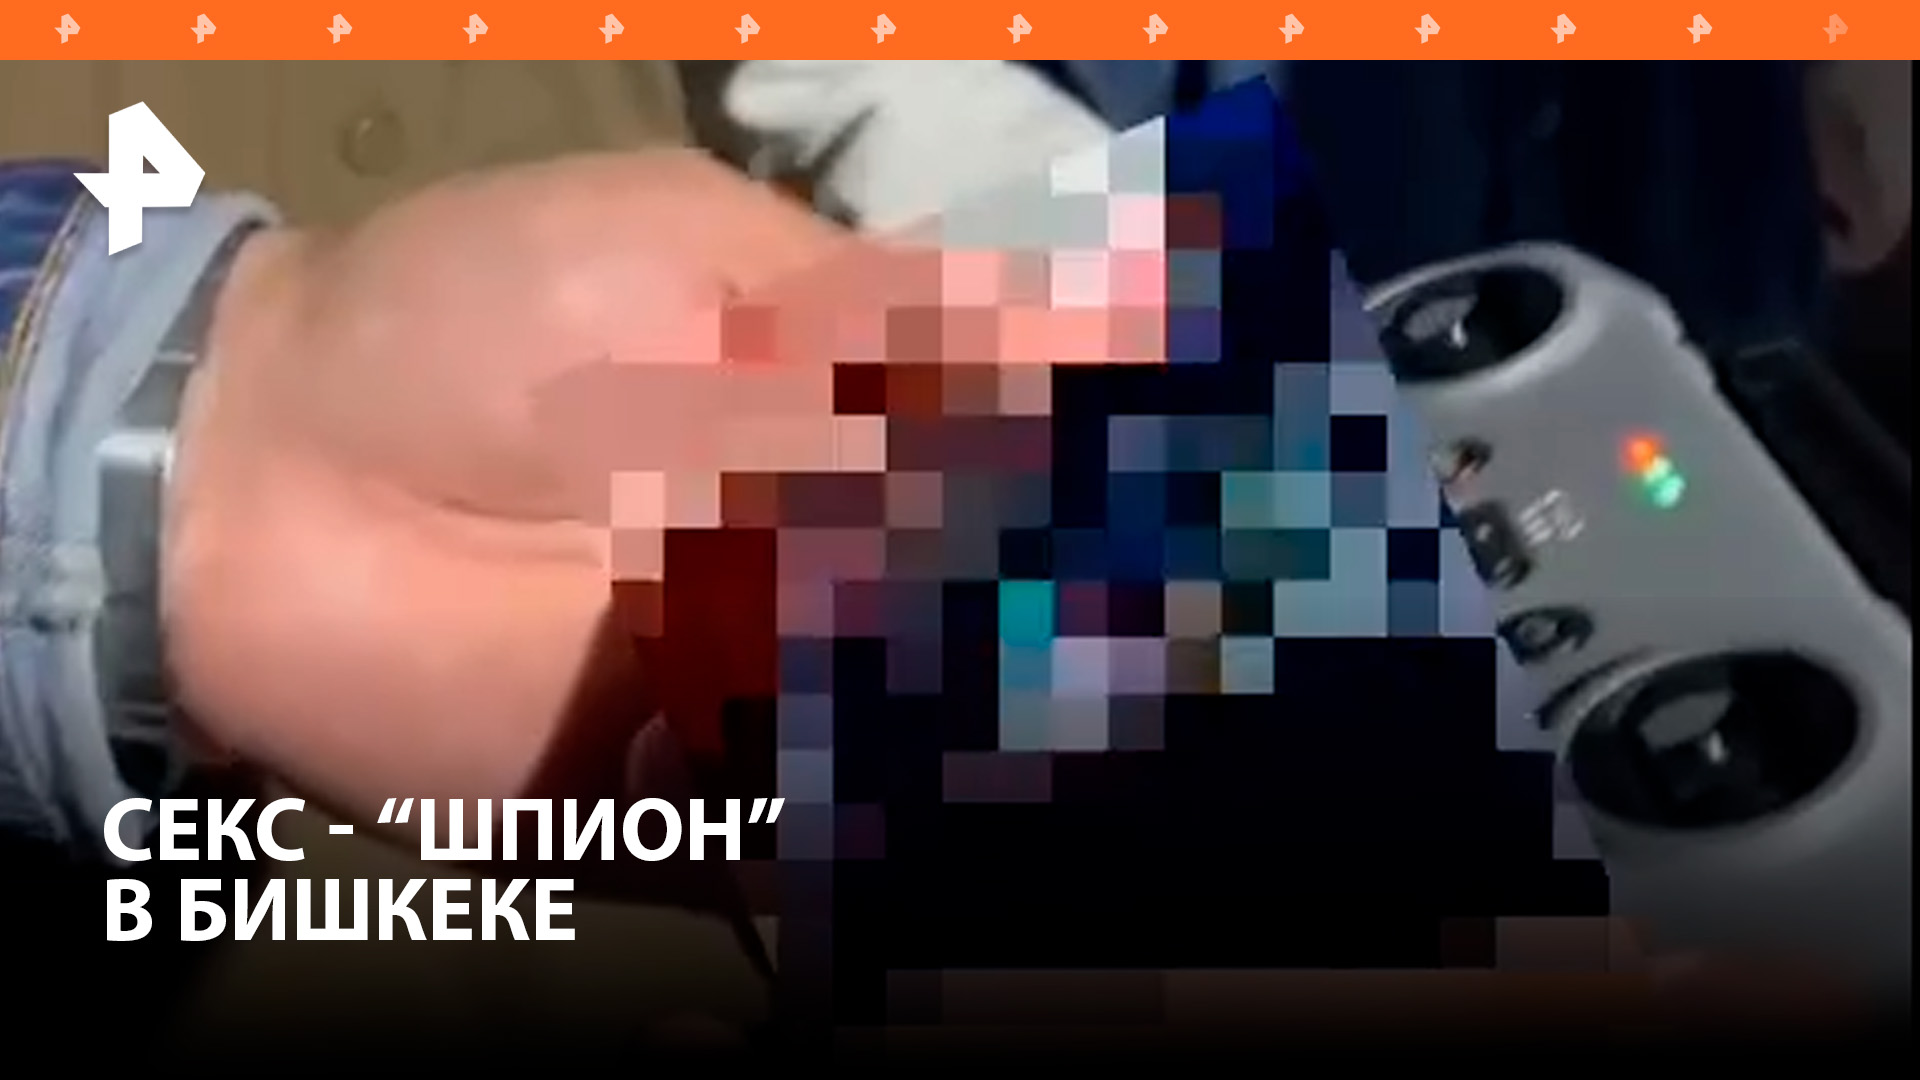 Извращенец снимал пары за сексом через окна с помощью дрона в Бишкеке